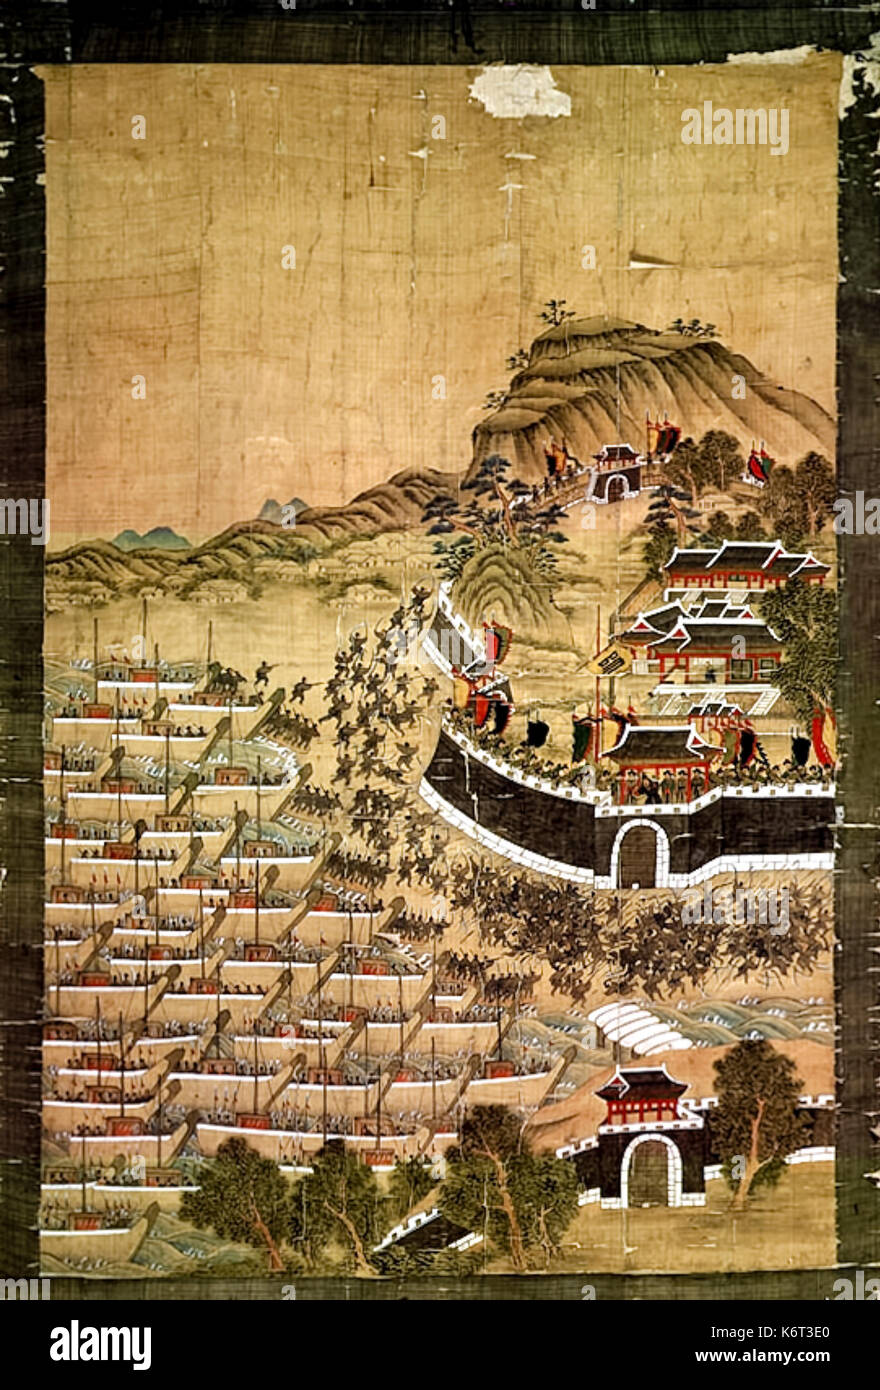 Die Iege von Busanjin Festung" Seidenmalerei, die japanischen Streitkräfte inszeniert eine amphibische Landung und die die koreanische Festung während der japanischen Invasion in Korea im Jahre 1592, die erste Schlacht in der Imjon Krieg. Foto von 1709 Seidenmalerei vom Künstler Byeon Bak. Stockfoto